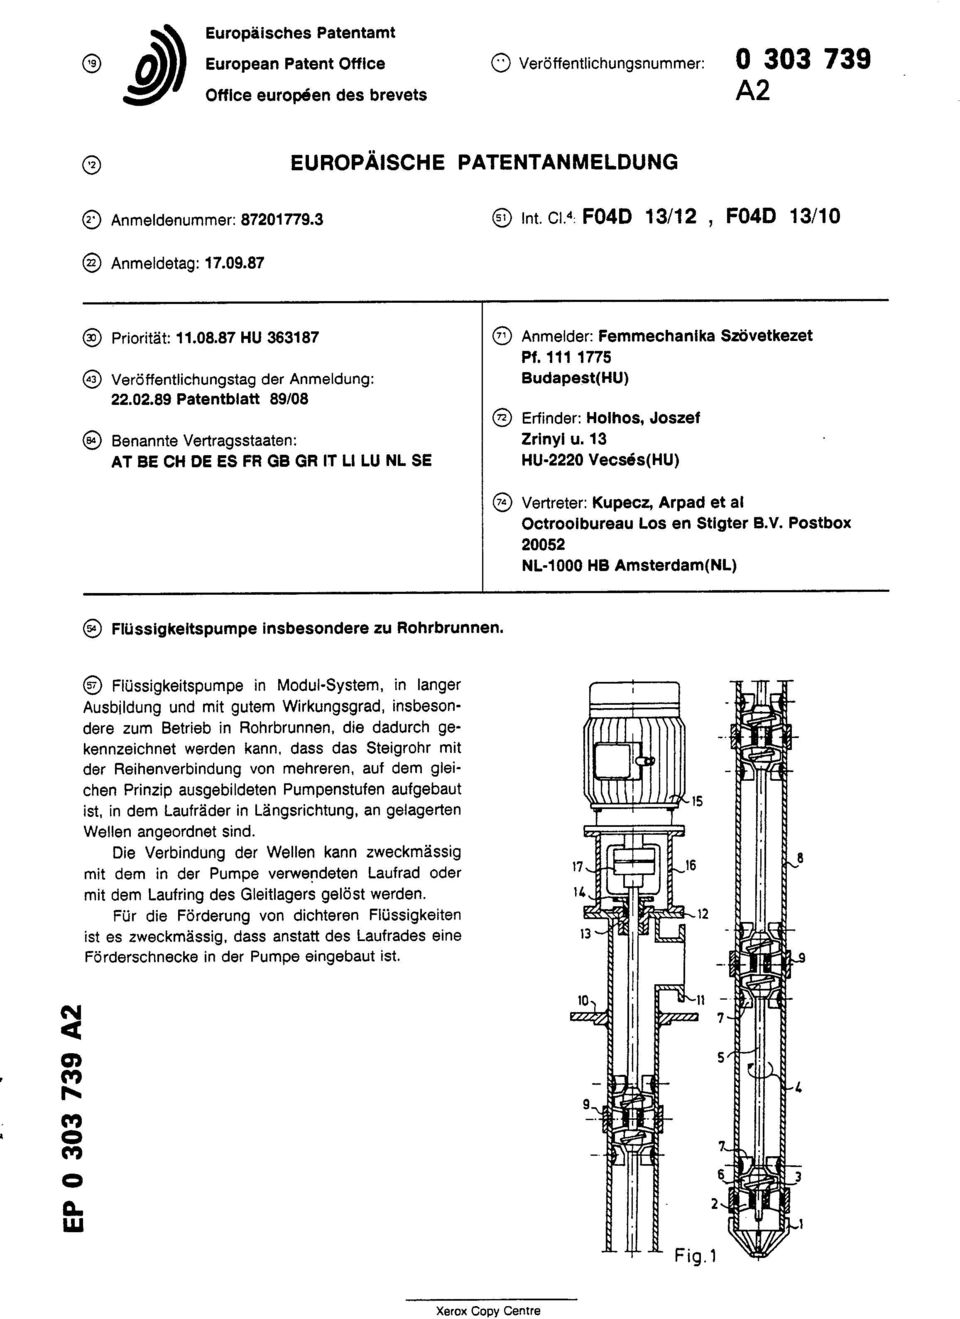 89 Patentblatt 89/08 Erfinder: Holhos, Joszef Benannte Vertragsstaaten: Zrinyi u.